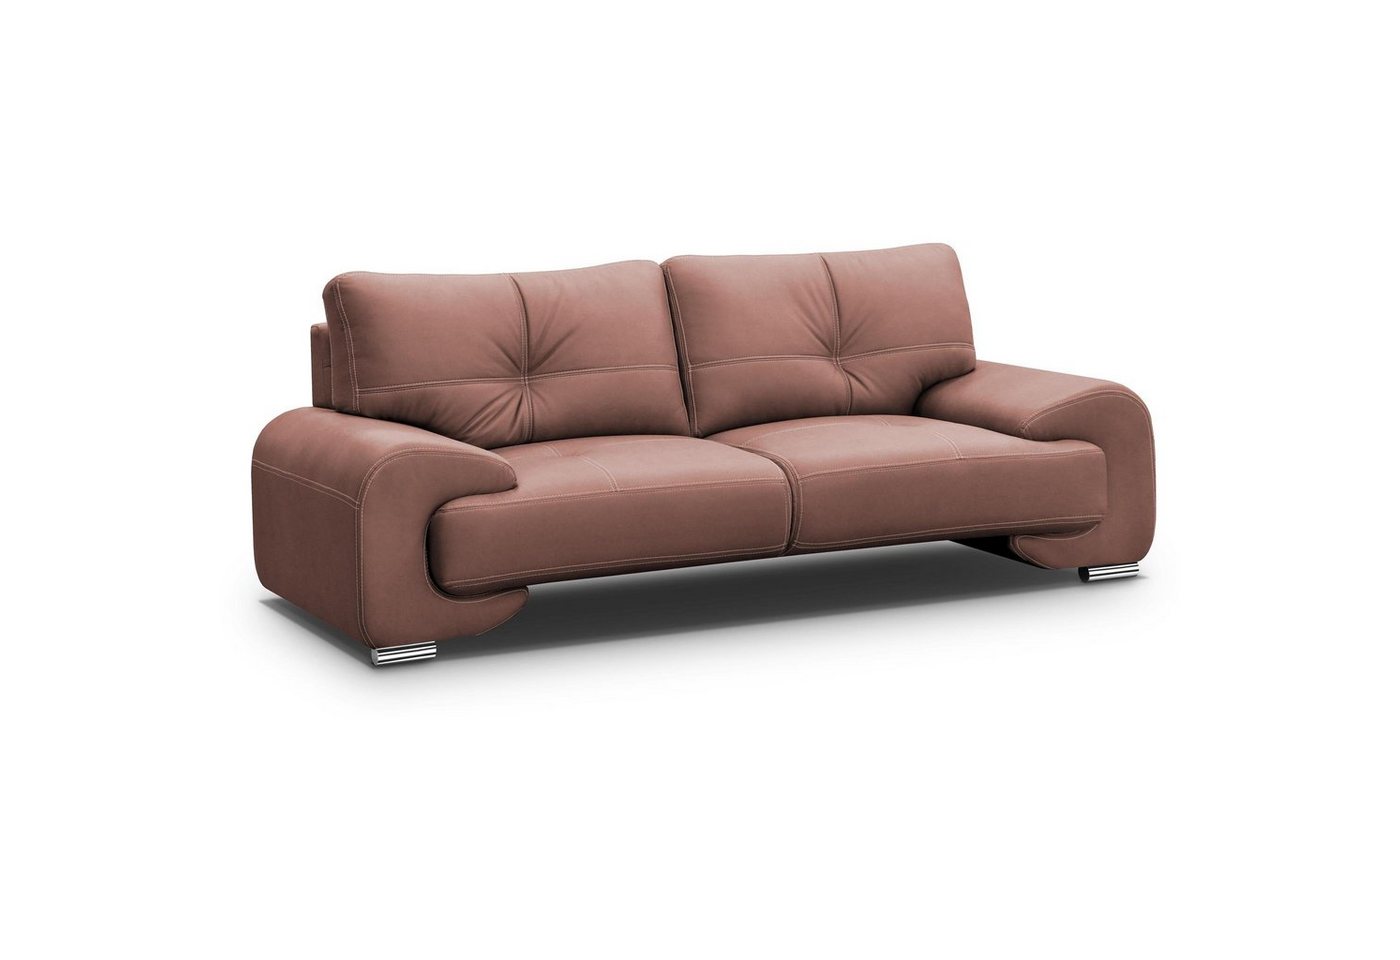 Beautysofa 3-Sitzer Maxime lux, 3-Sitzer Sofa im modernes Design, mit Wellenunterfederung, mit dekorativen Nähten, Kunstleder, Dreisitzer von Beautysofa